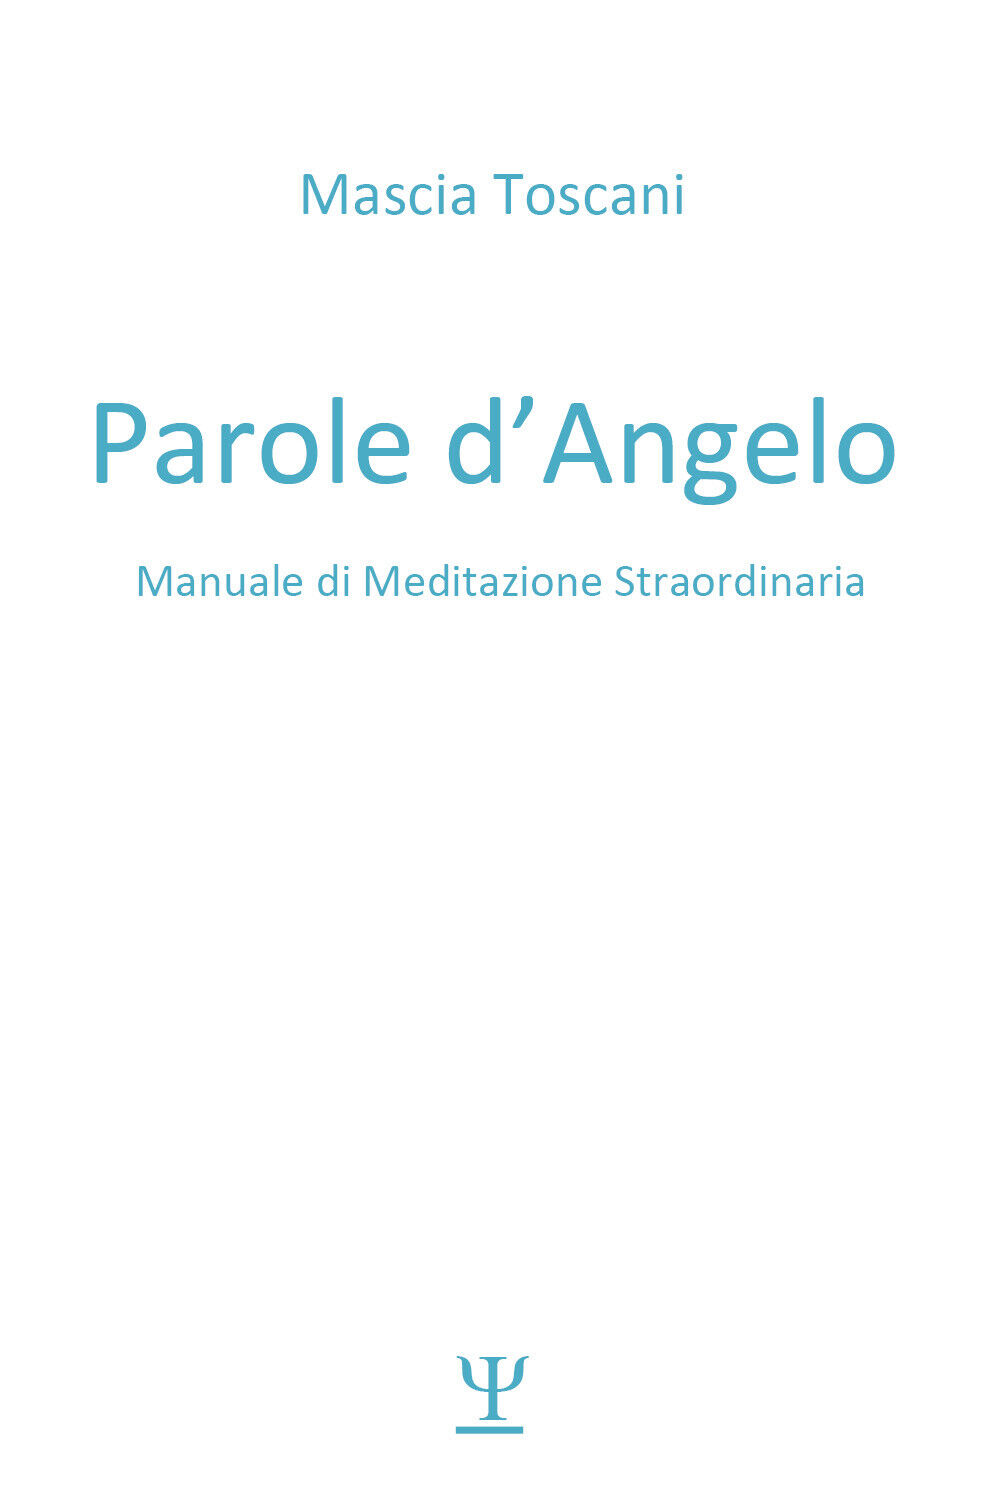 Parole d'angelo. Manuale di meditazione straordinaria di Mascia Toscani,  2021, 